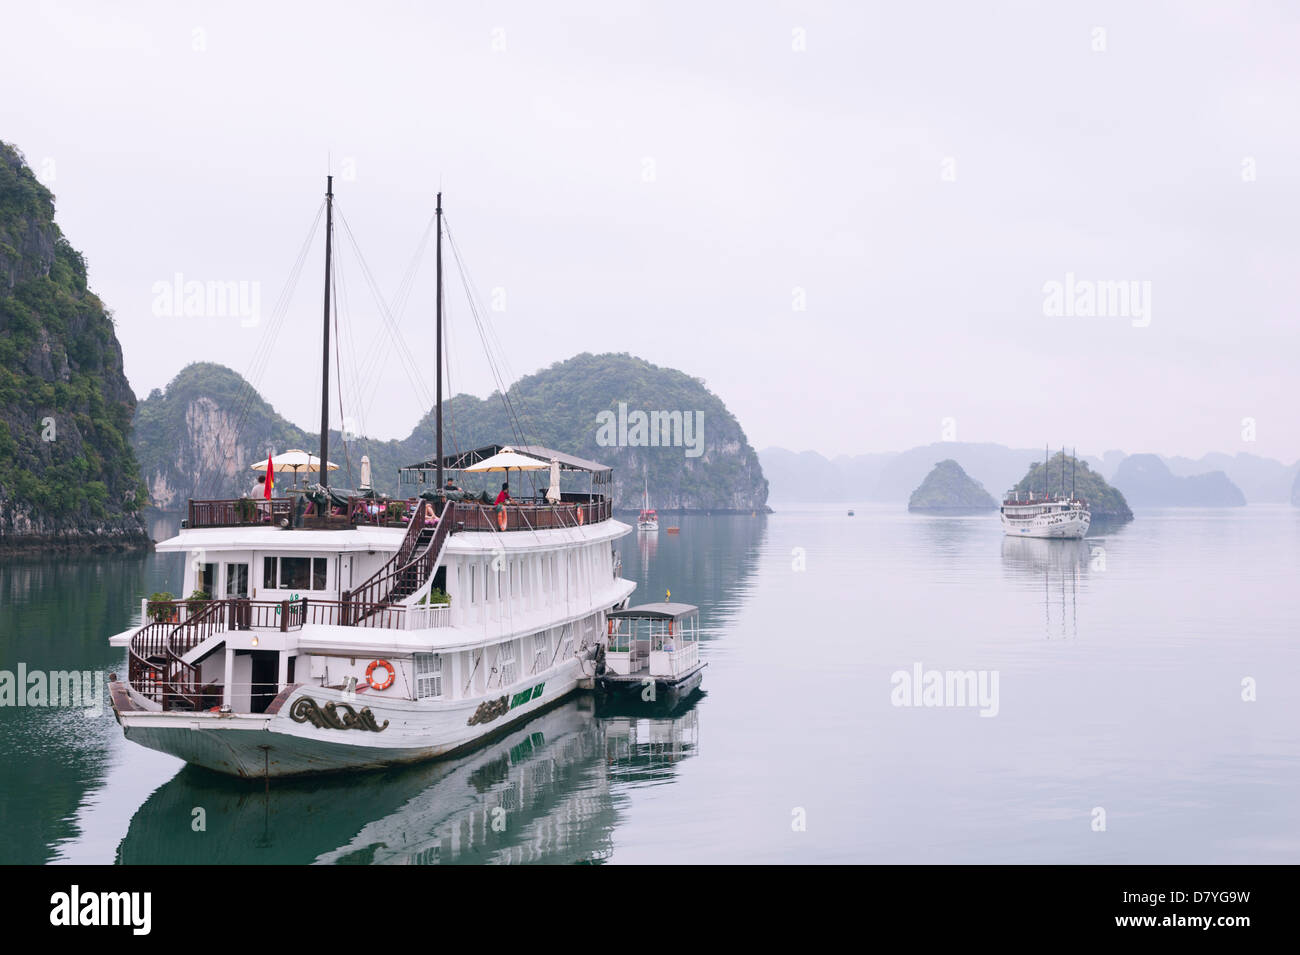 La baie d'Ha Long, Vietnam - croisière touristique bateau amarré Banque D'Images